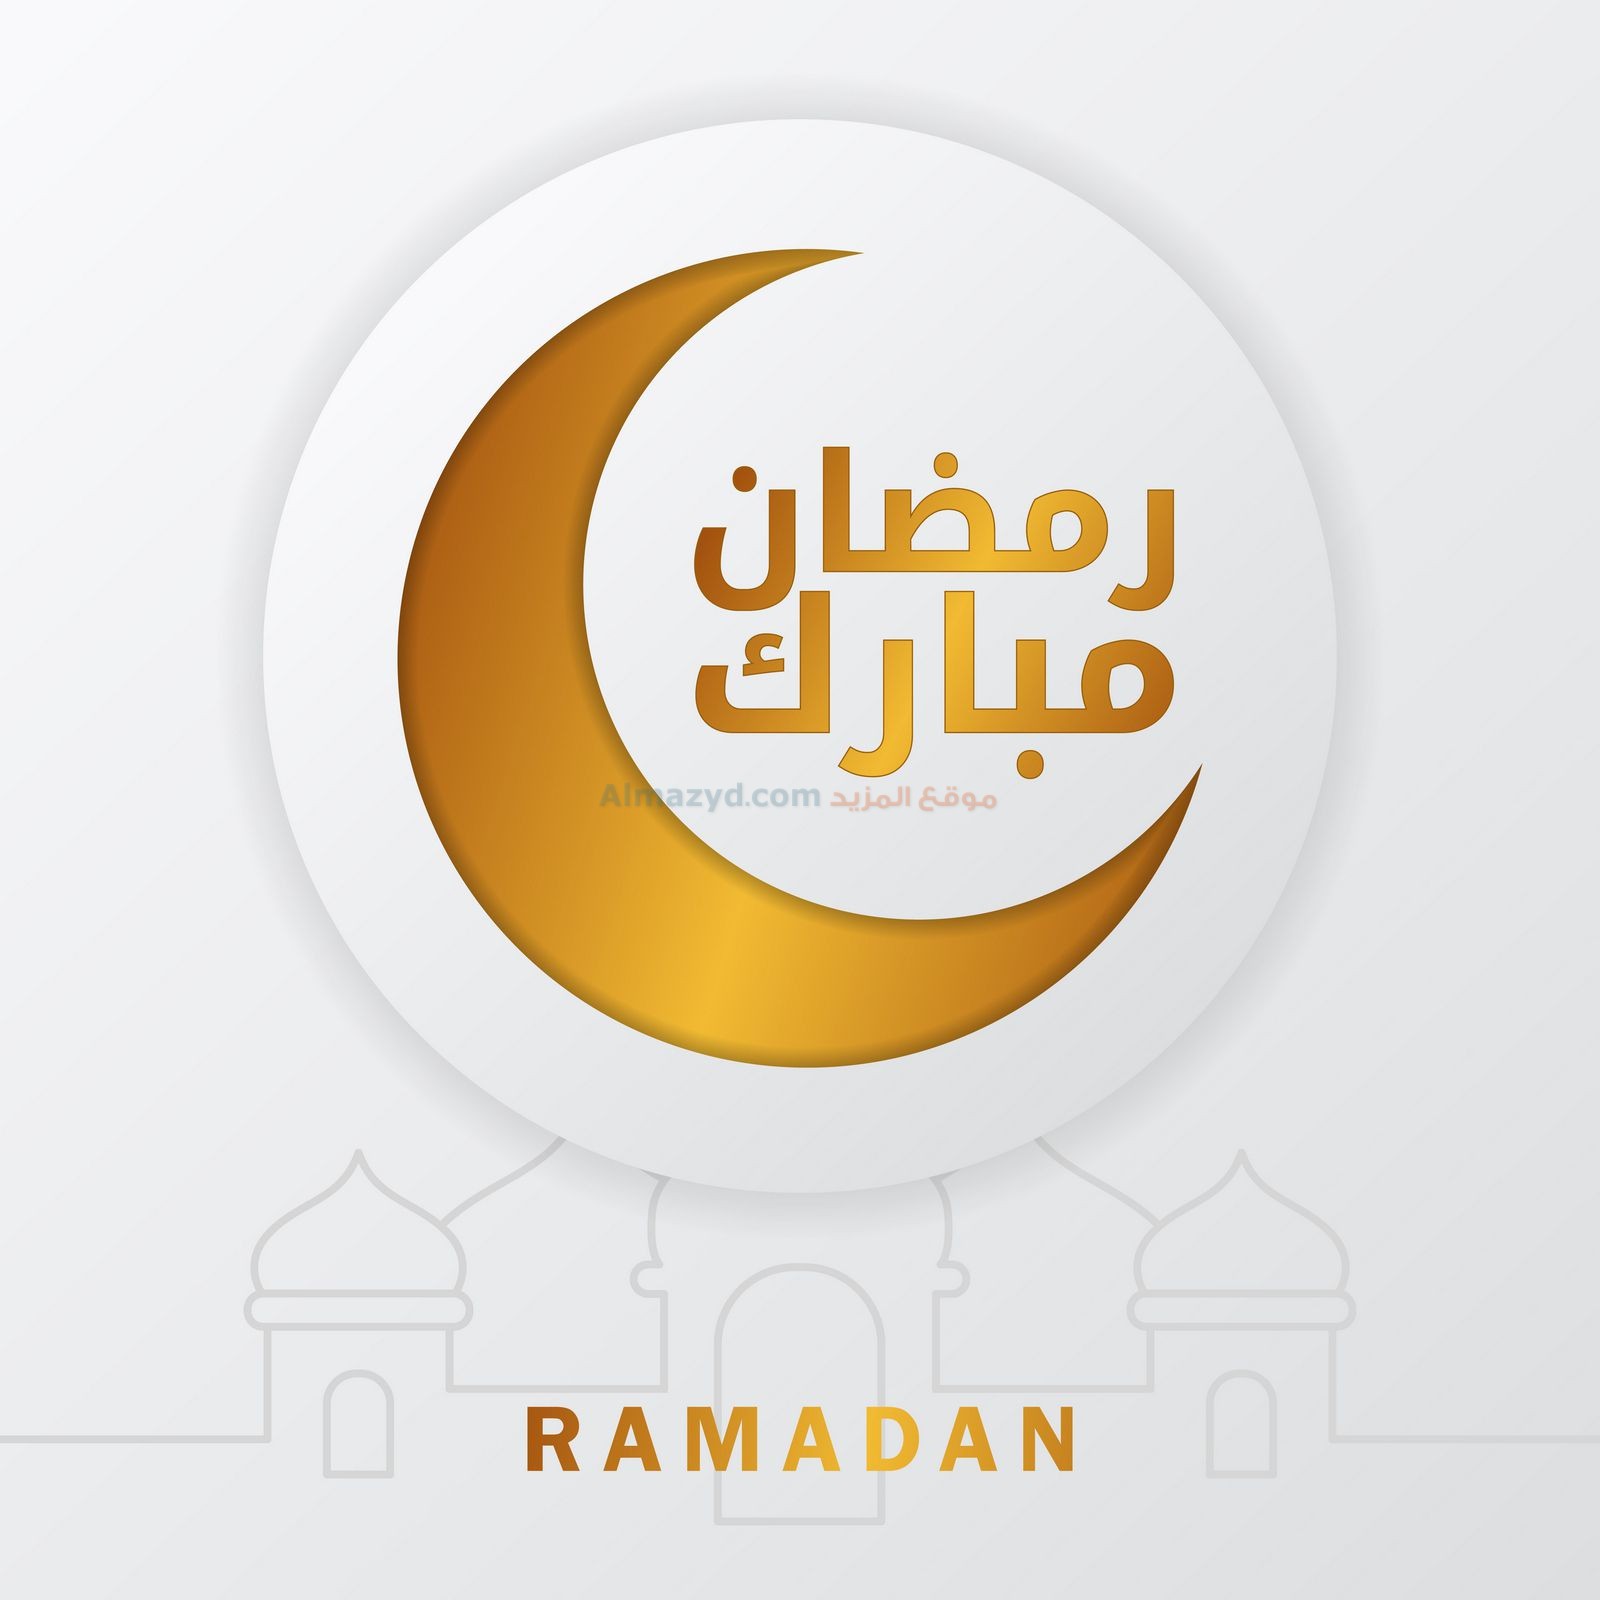 صور رمضان كريم، Ramadan Images ، خلفيات رمضان كريم